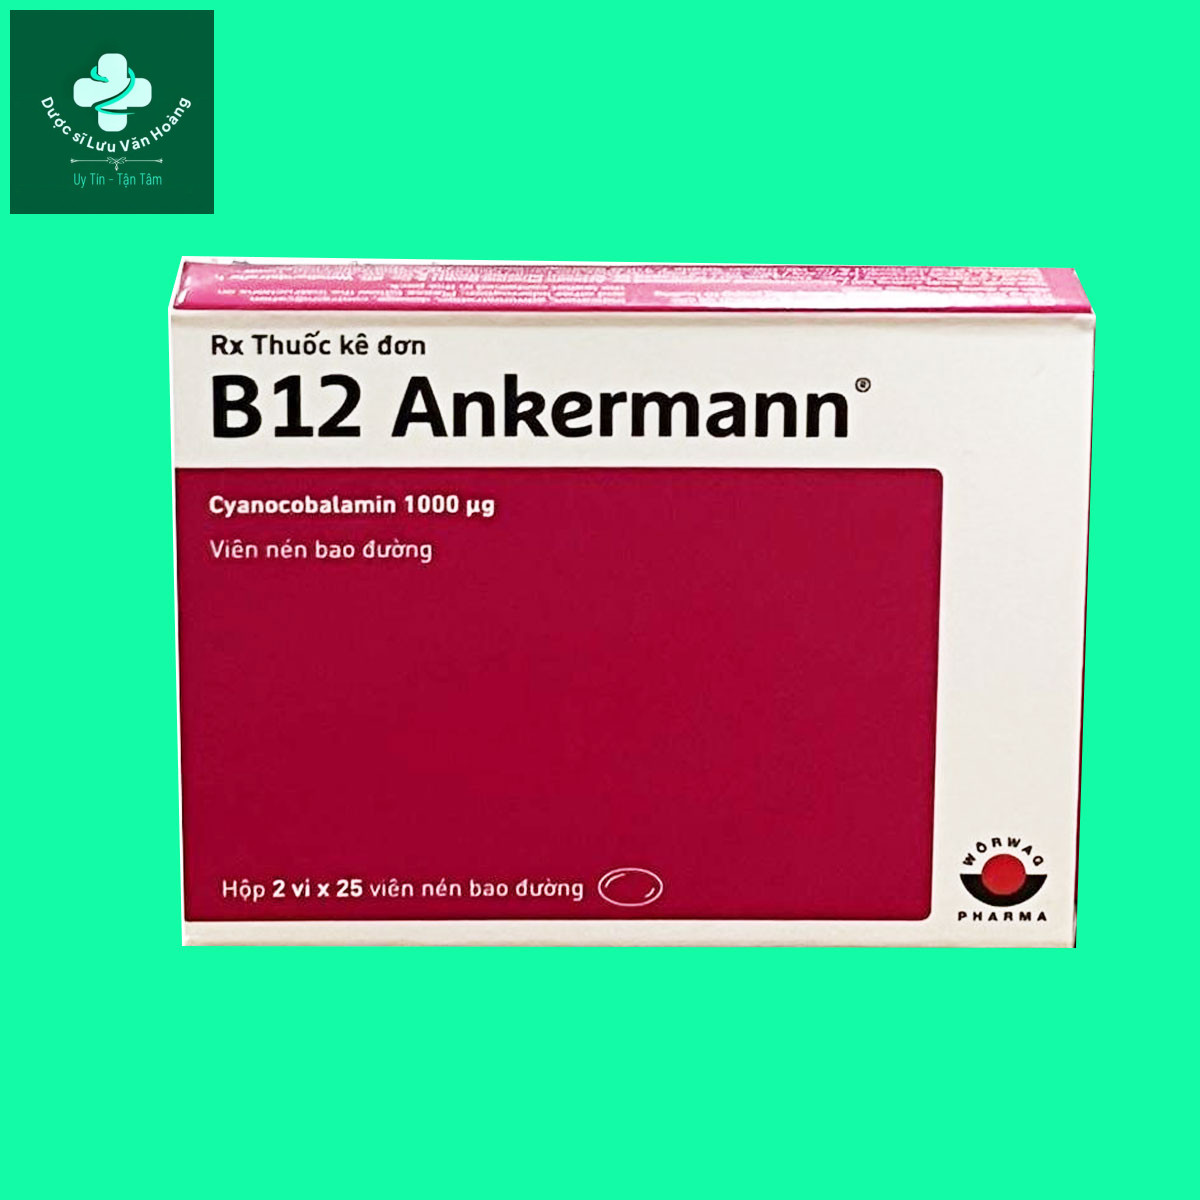 B12 Ankermann: Phòng và điều trị bệnh thiếu máu - Dược sĩ Lưu Văn